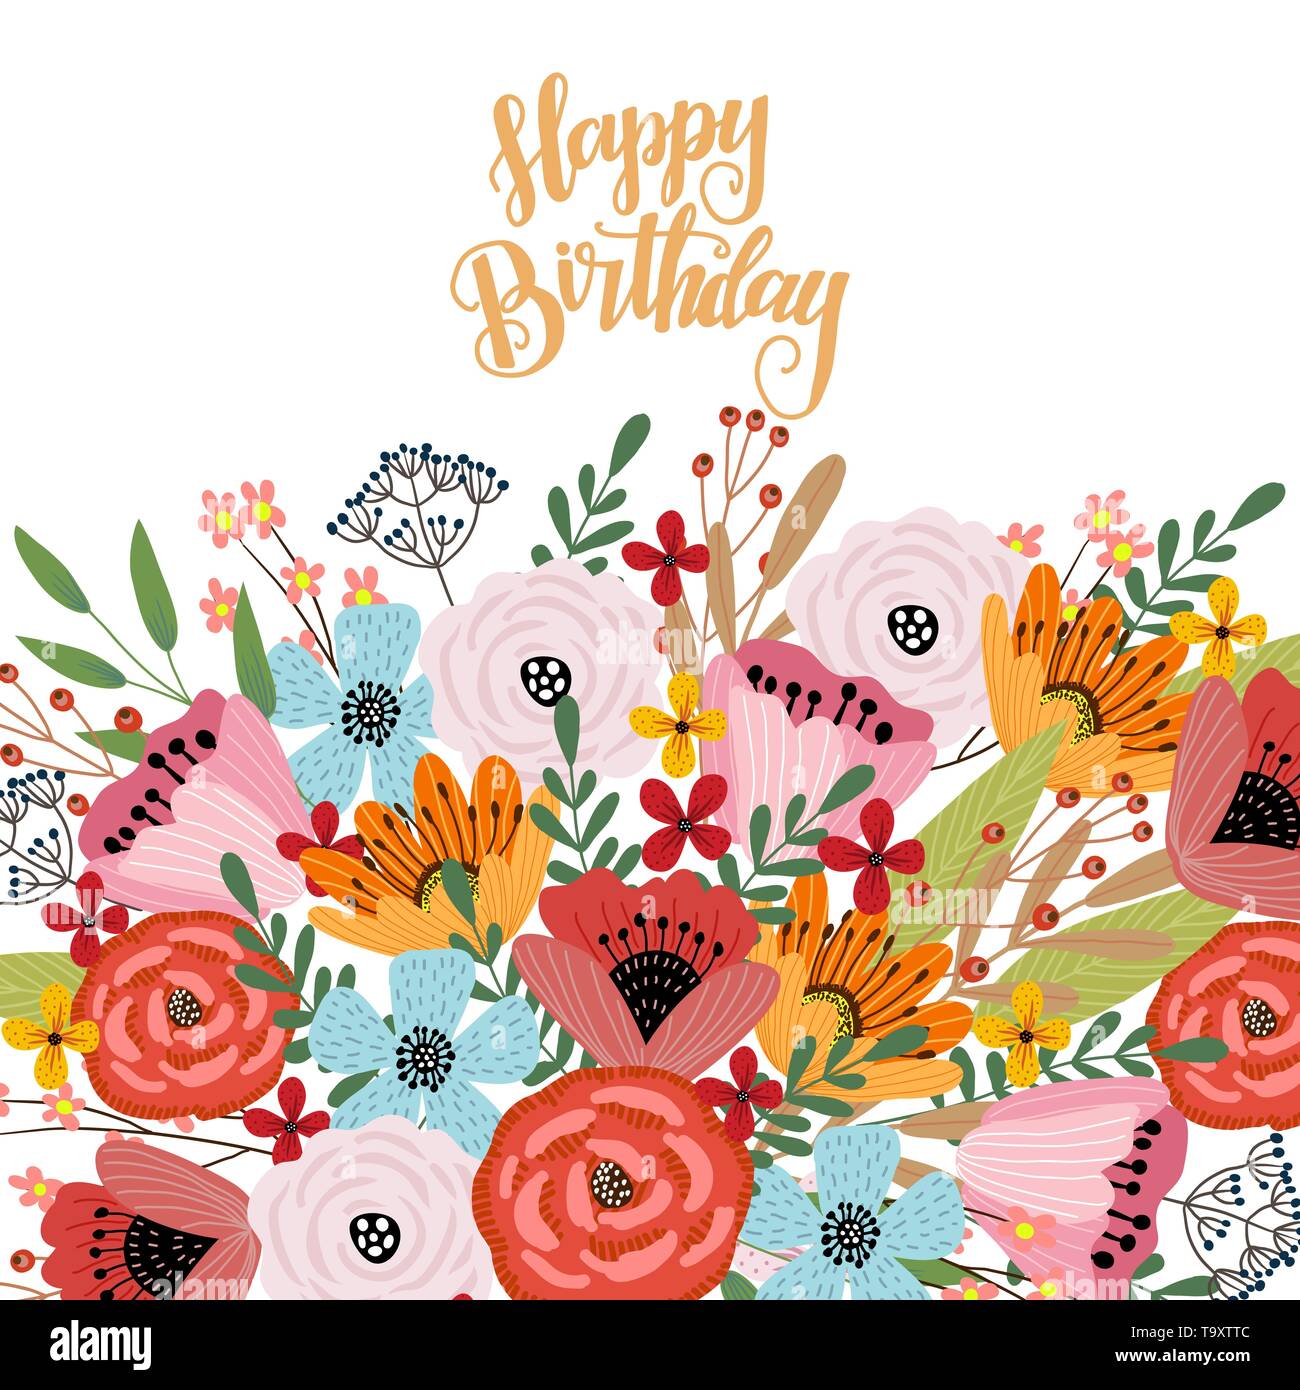 Buon Compleanno Modello Di Cartolina Con Simpatico Disegno A Mano Luminoso Bouquet Di Fiori Su Fondo Bianco Vettore Immagine E Vettoriale Alamy